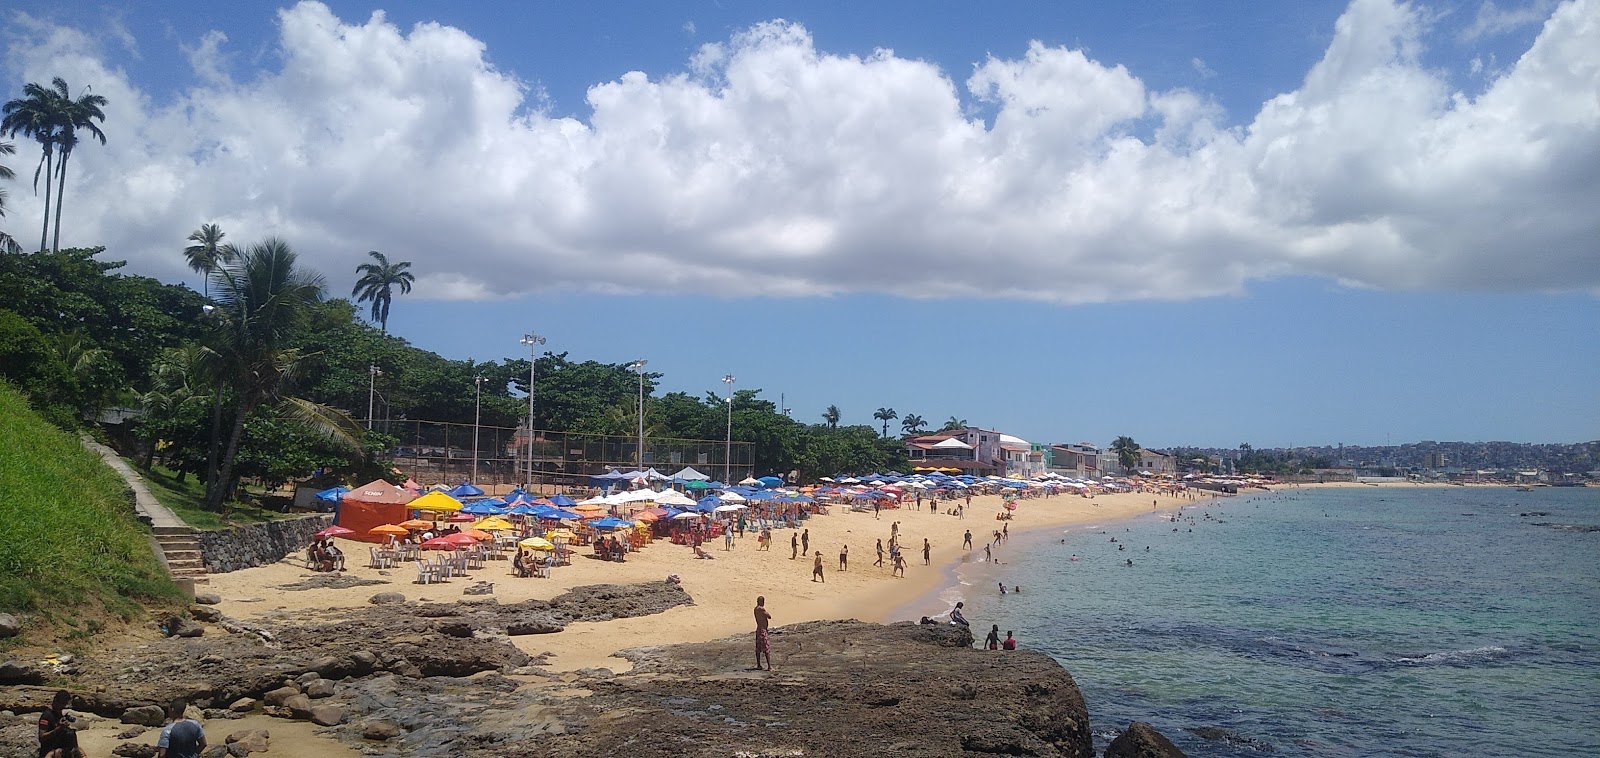 Foto af Praia da Boa Viagem - populært sted blandt afslapningskendere